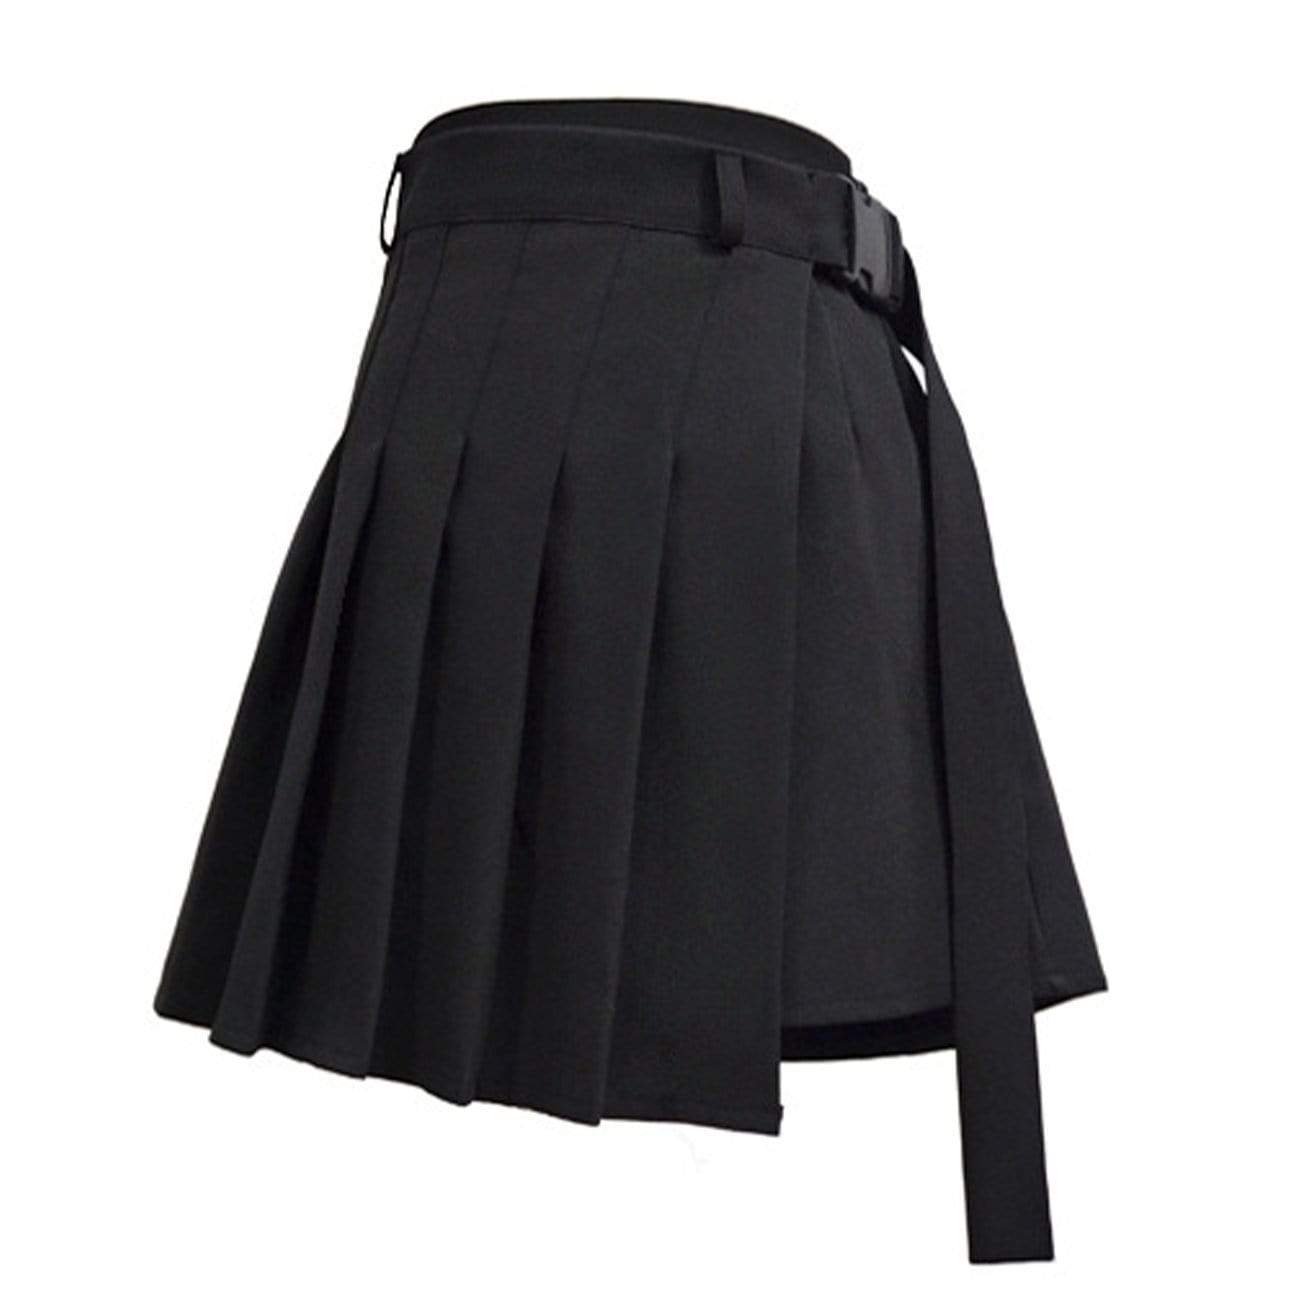 TO Vintage Plaid Irregular Pleated Skirt